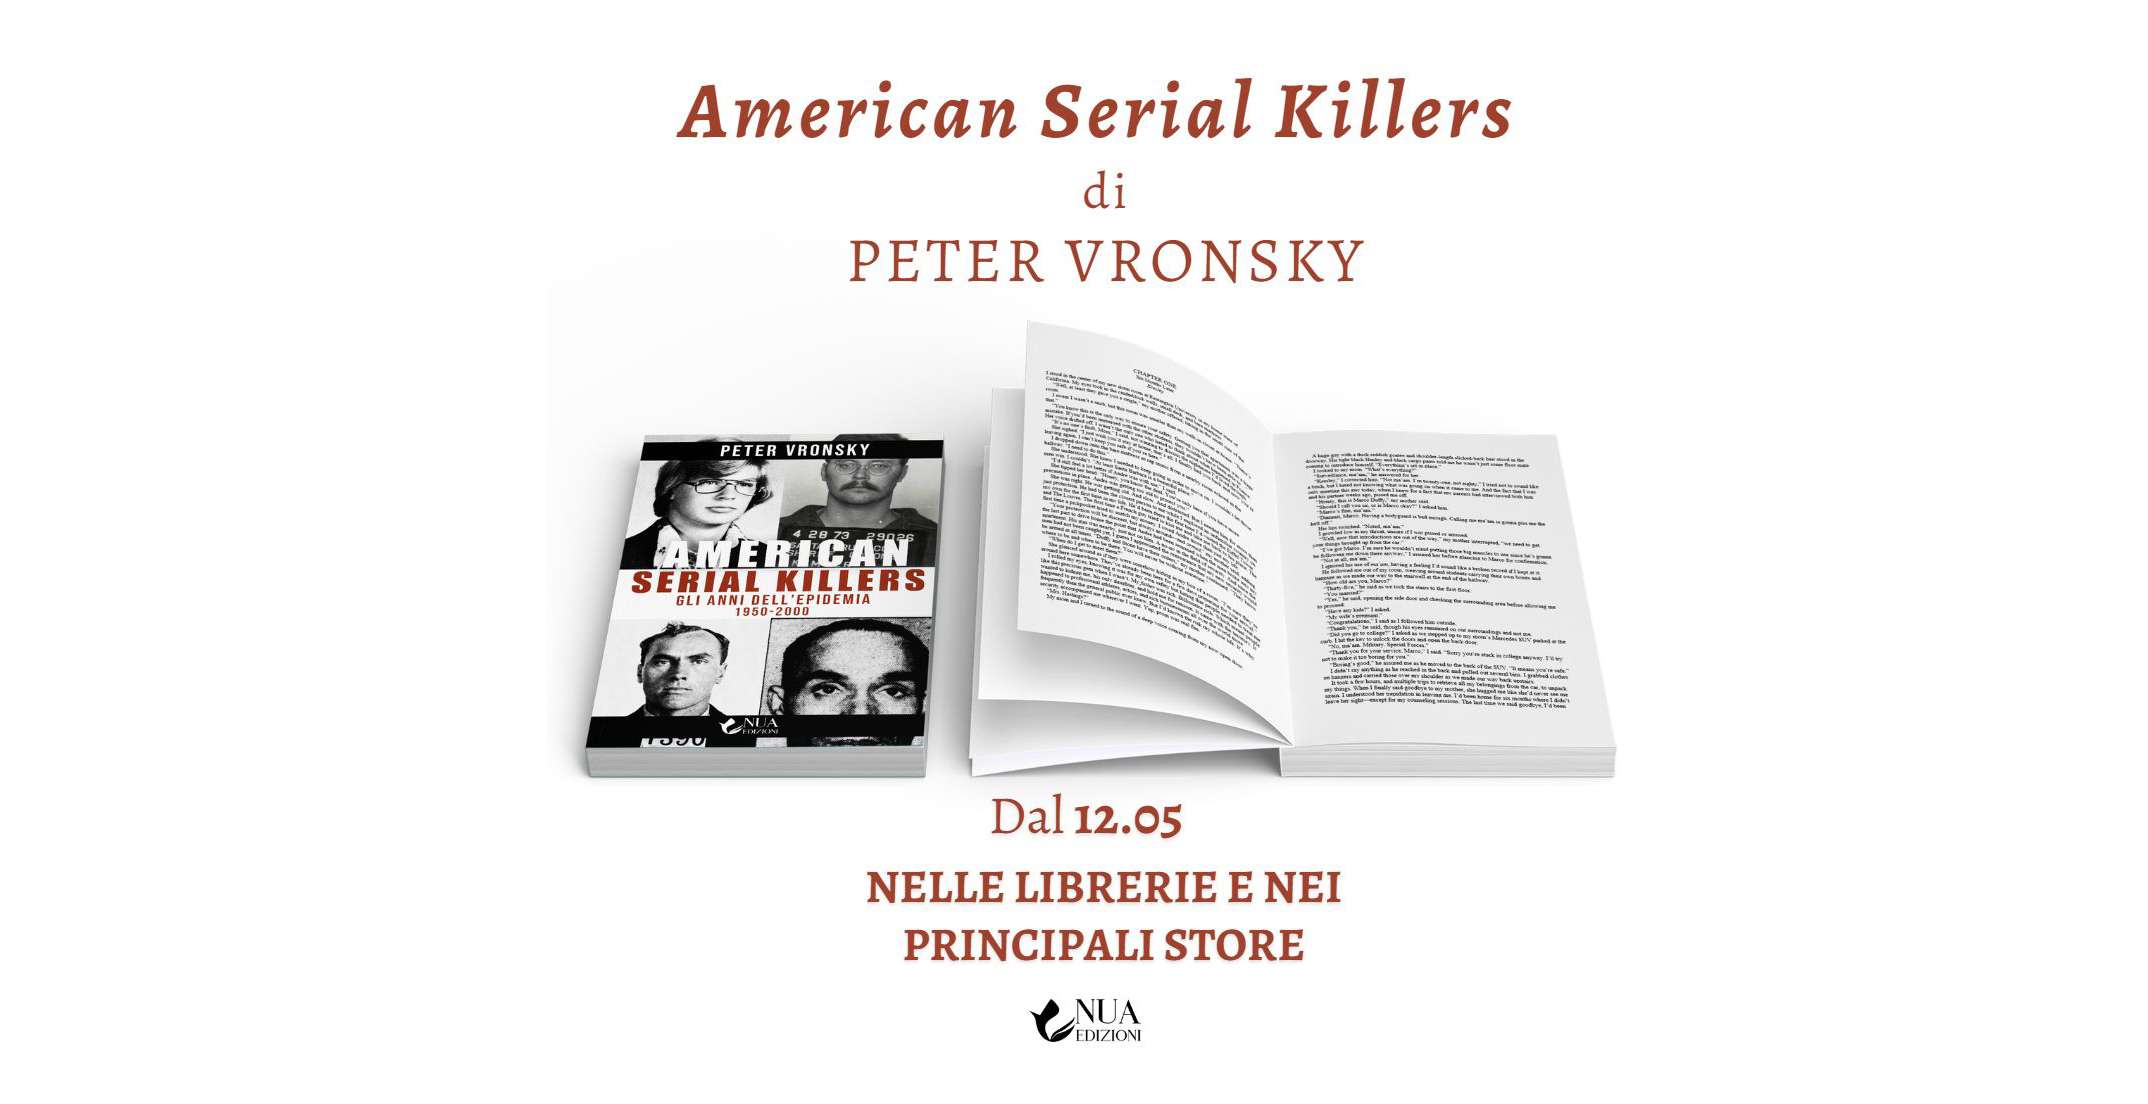 American Serial Killers: The Deadliest Years 1950-2000 by Peter Vronsky